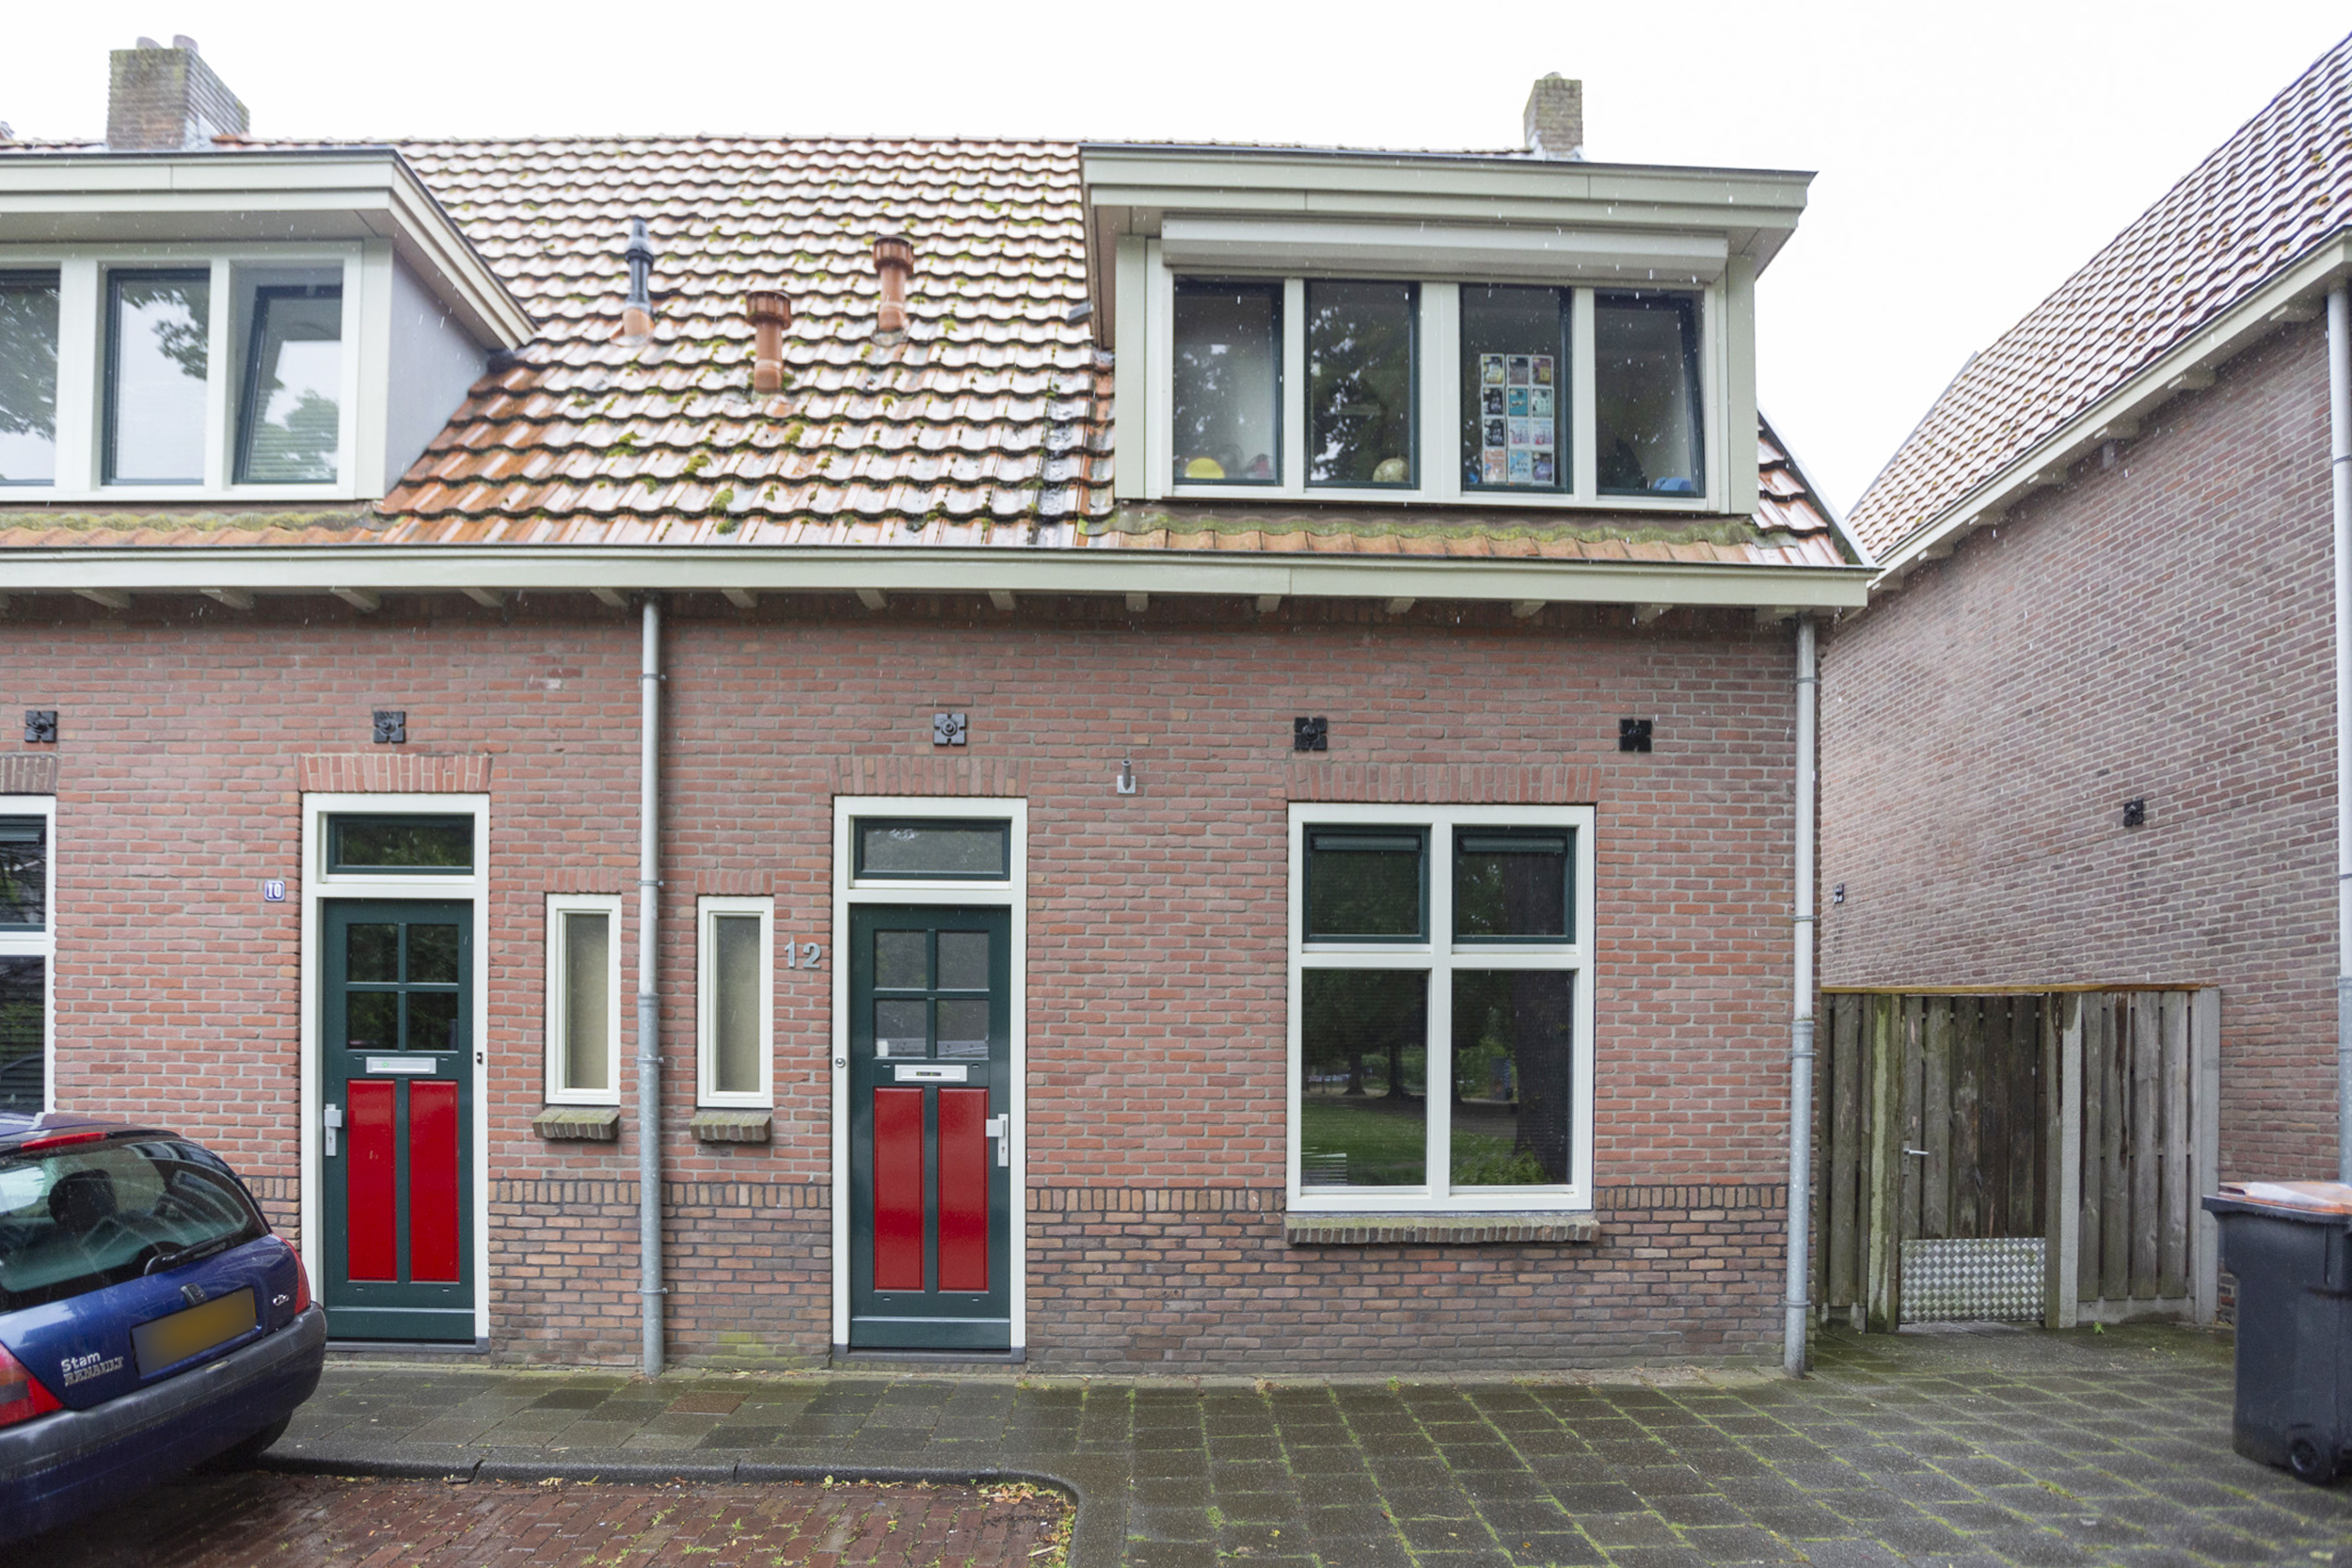 Ruysdaelstraat 12, 5025 PB Tilburg, Nederland